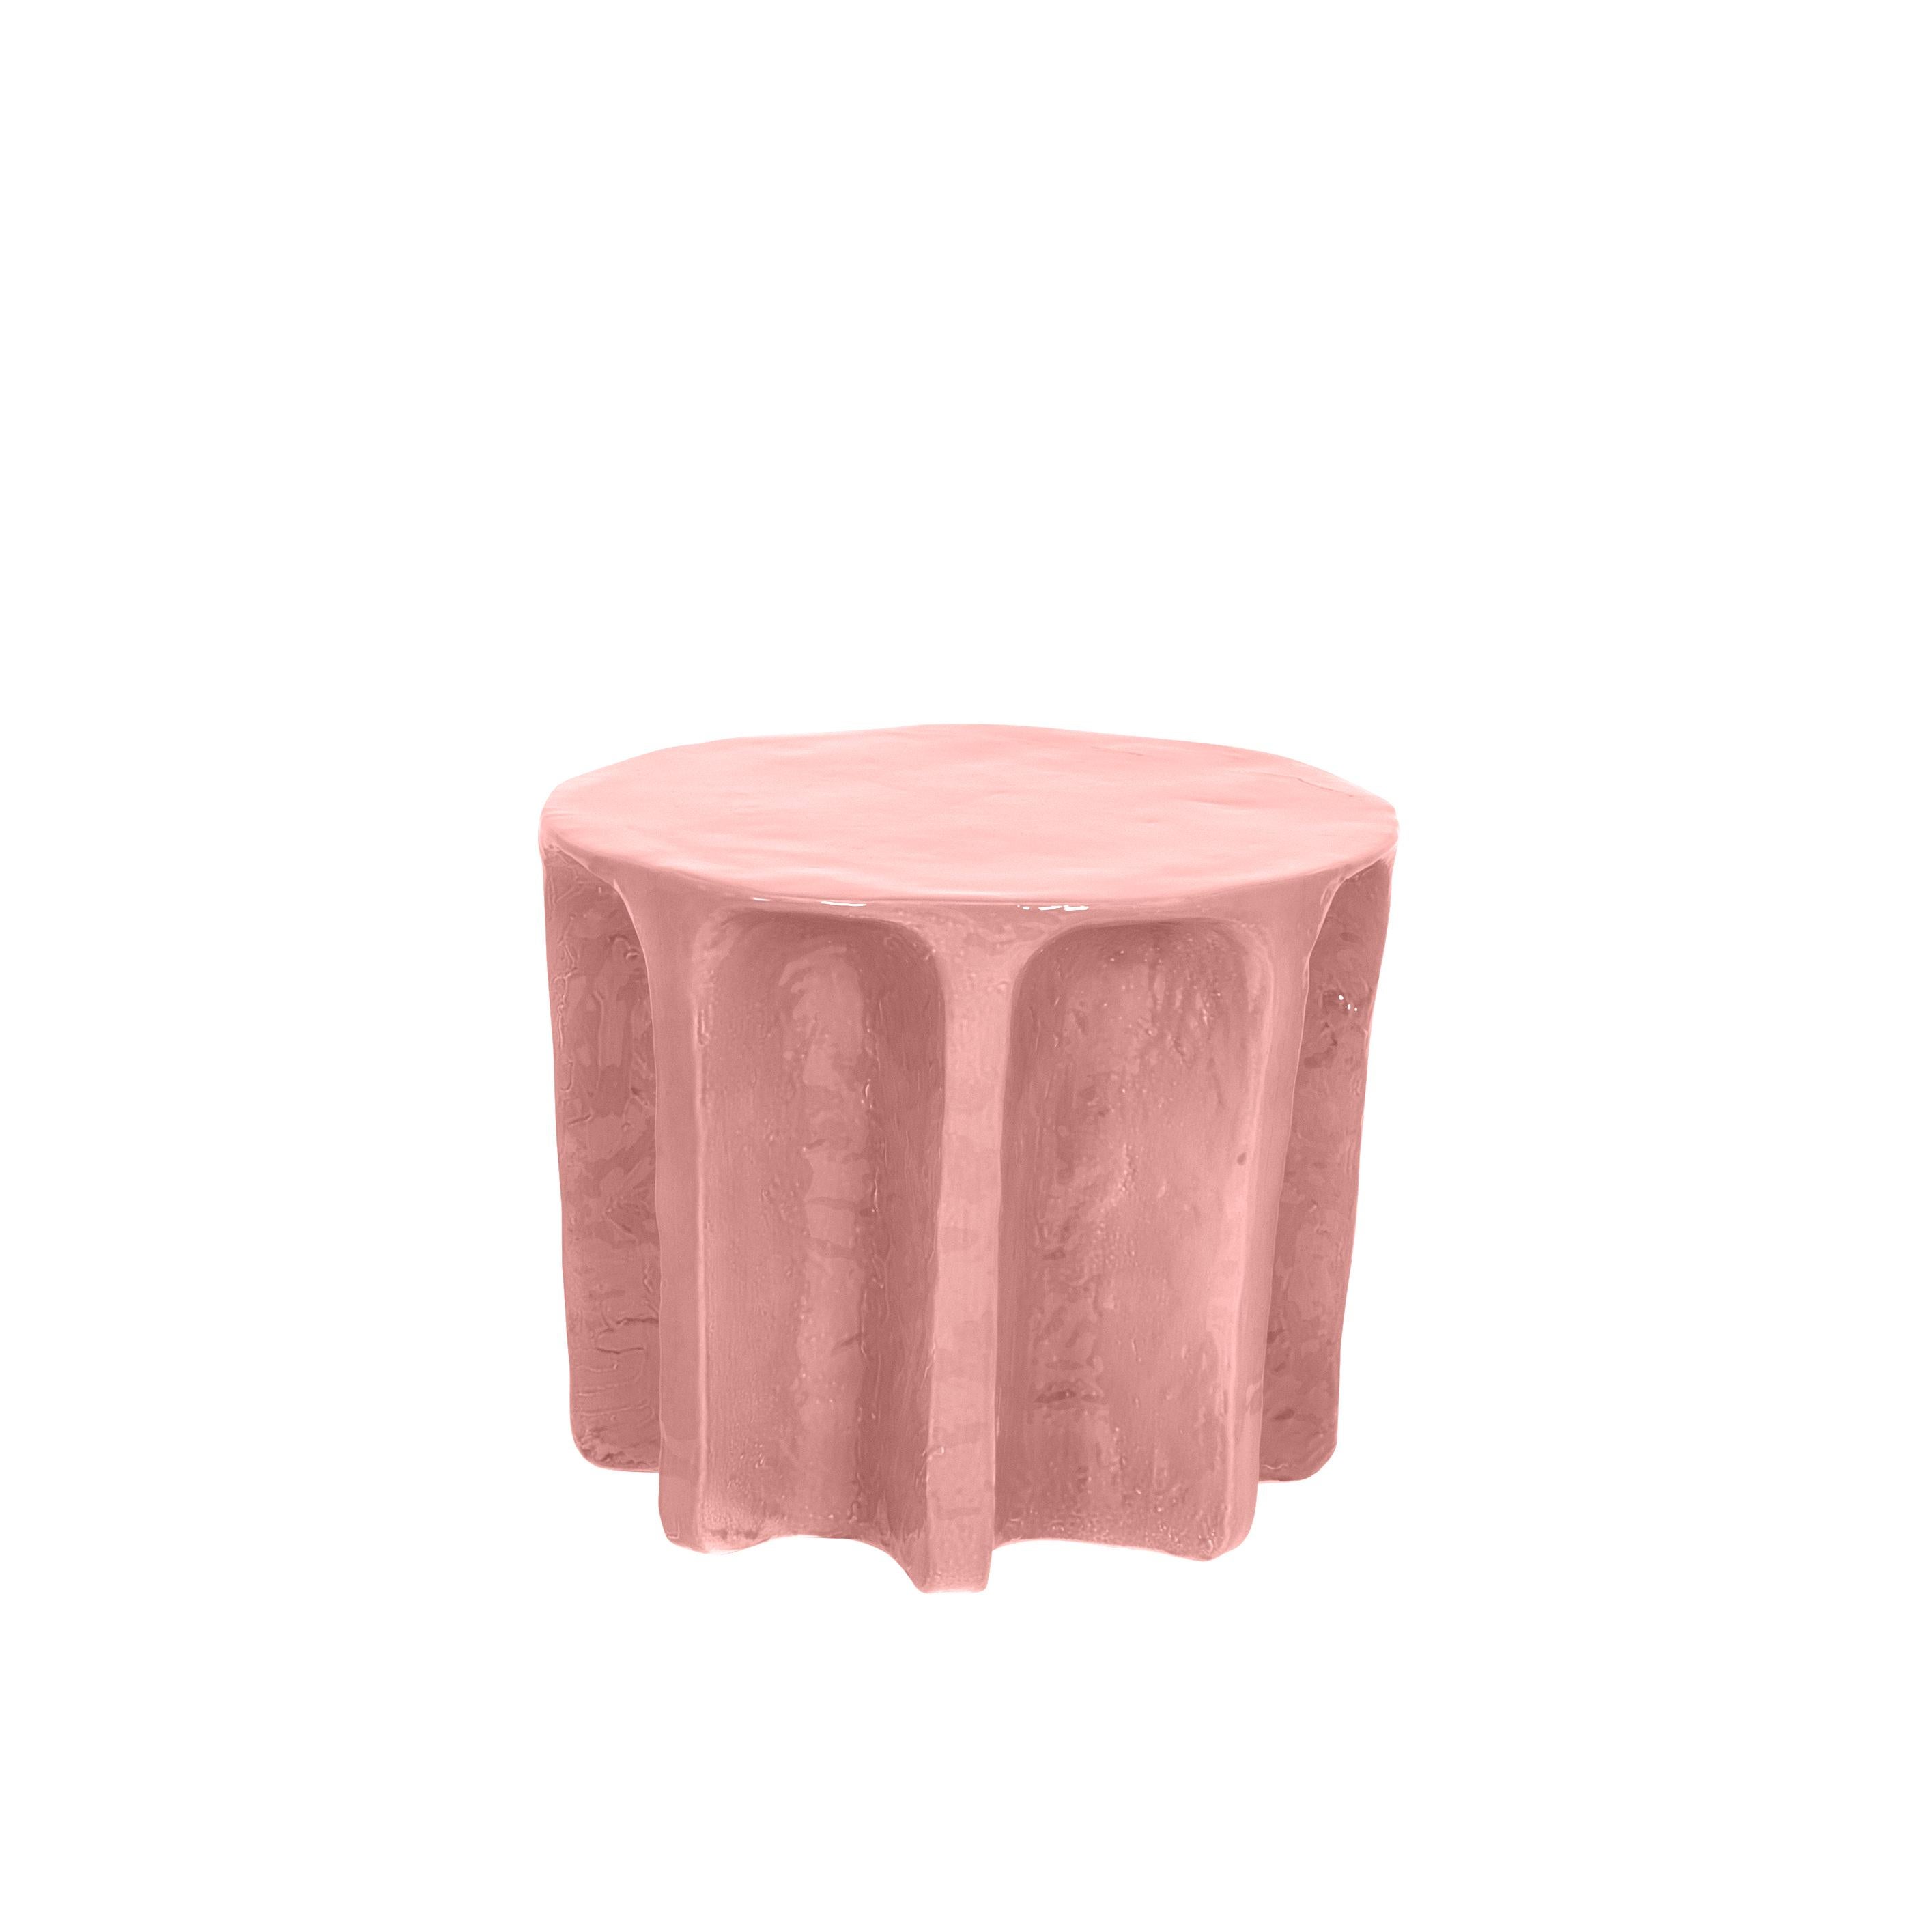 Chouchou runder rosa couchtisch von Pulpo
Abmessungen: T 55 x H 45 cm
MATERIALIEN: Keramik

Auch in verschiedenen Farben erhältlich.

Chouchou trägt die Umrisse einer antiken Säule - was, so wie ich den Designer Lorenzo Zanovello kenne,